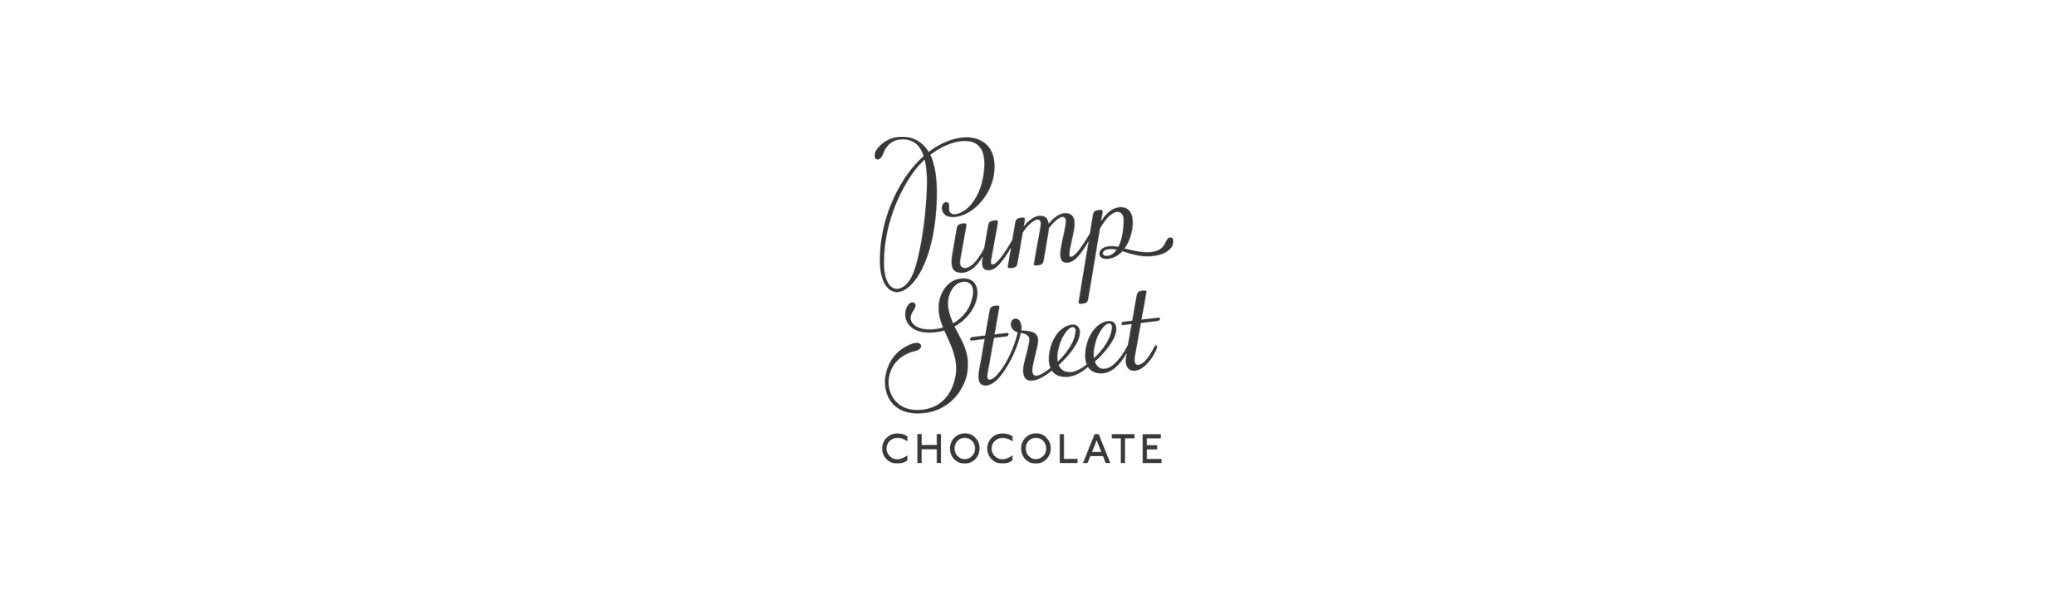 Pump Street: Coffret cadeau Pâtisserie au chocolat